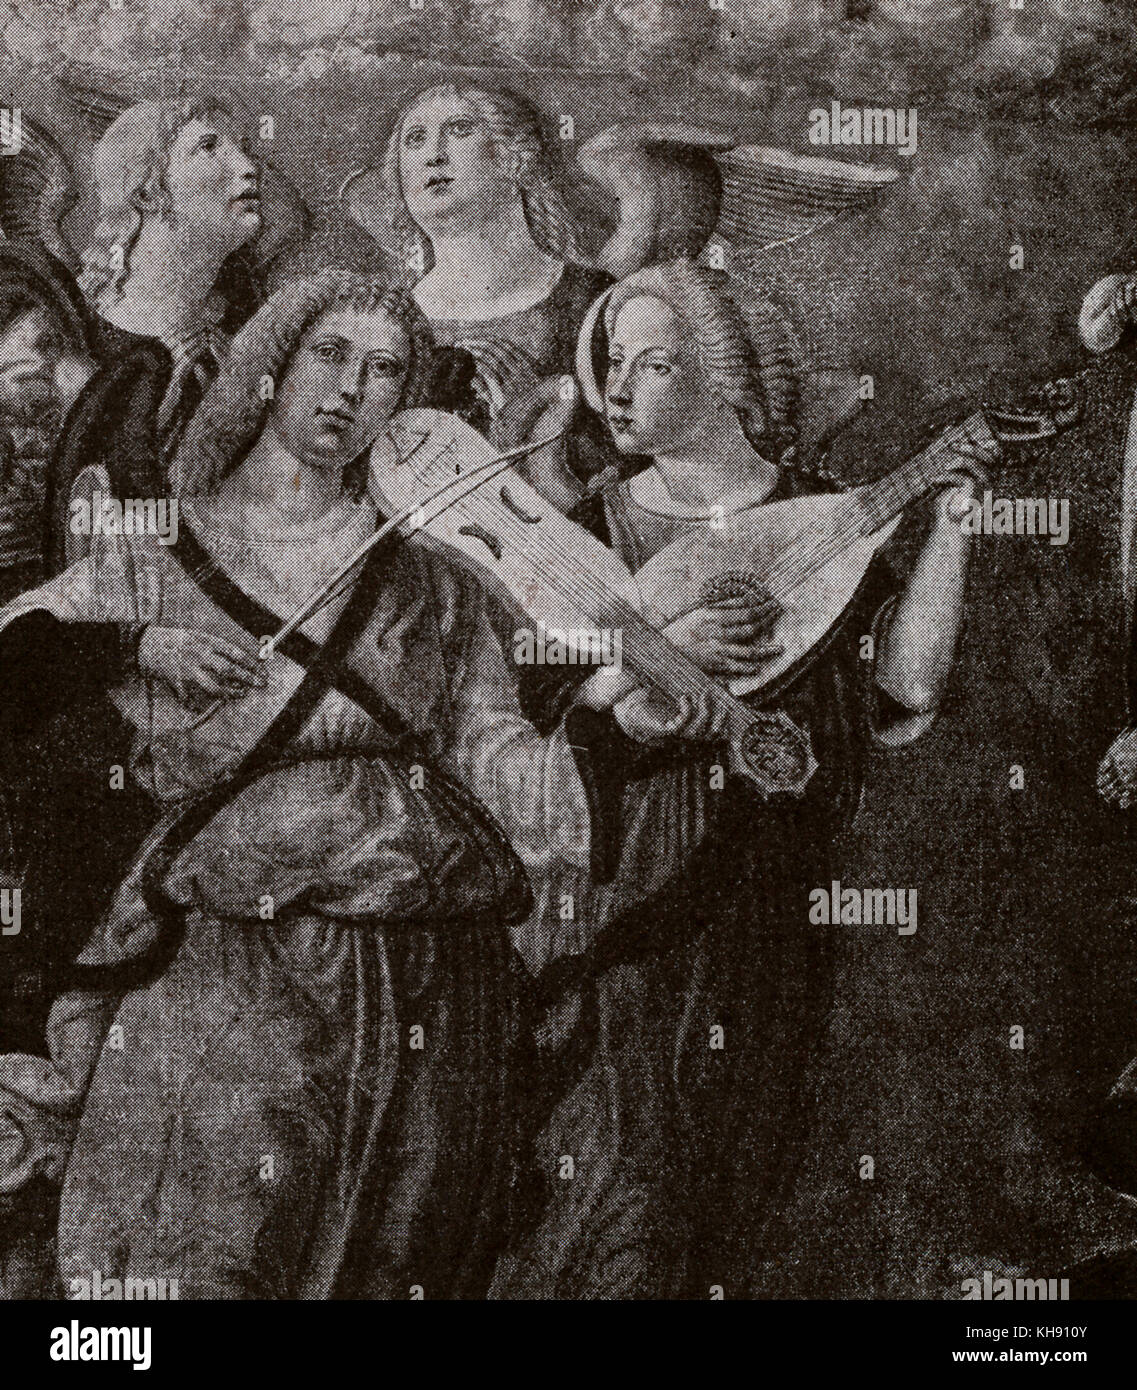 Anges jouant des instruments. (Double flûte, luth, psaltérion, tambourin, guitare-violon, mandole).image partie de 'l'ascension de la Vierge' (c.1500), par Girolamo di Benvenuto. Banque D'Images